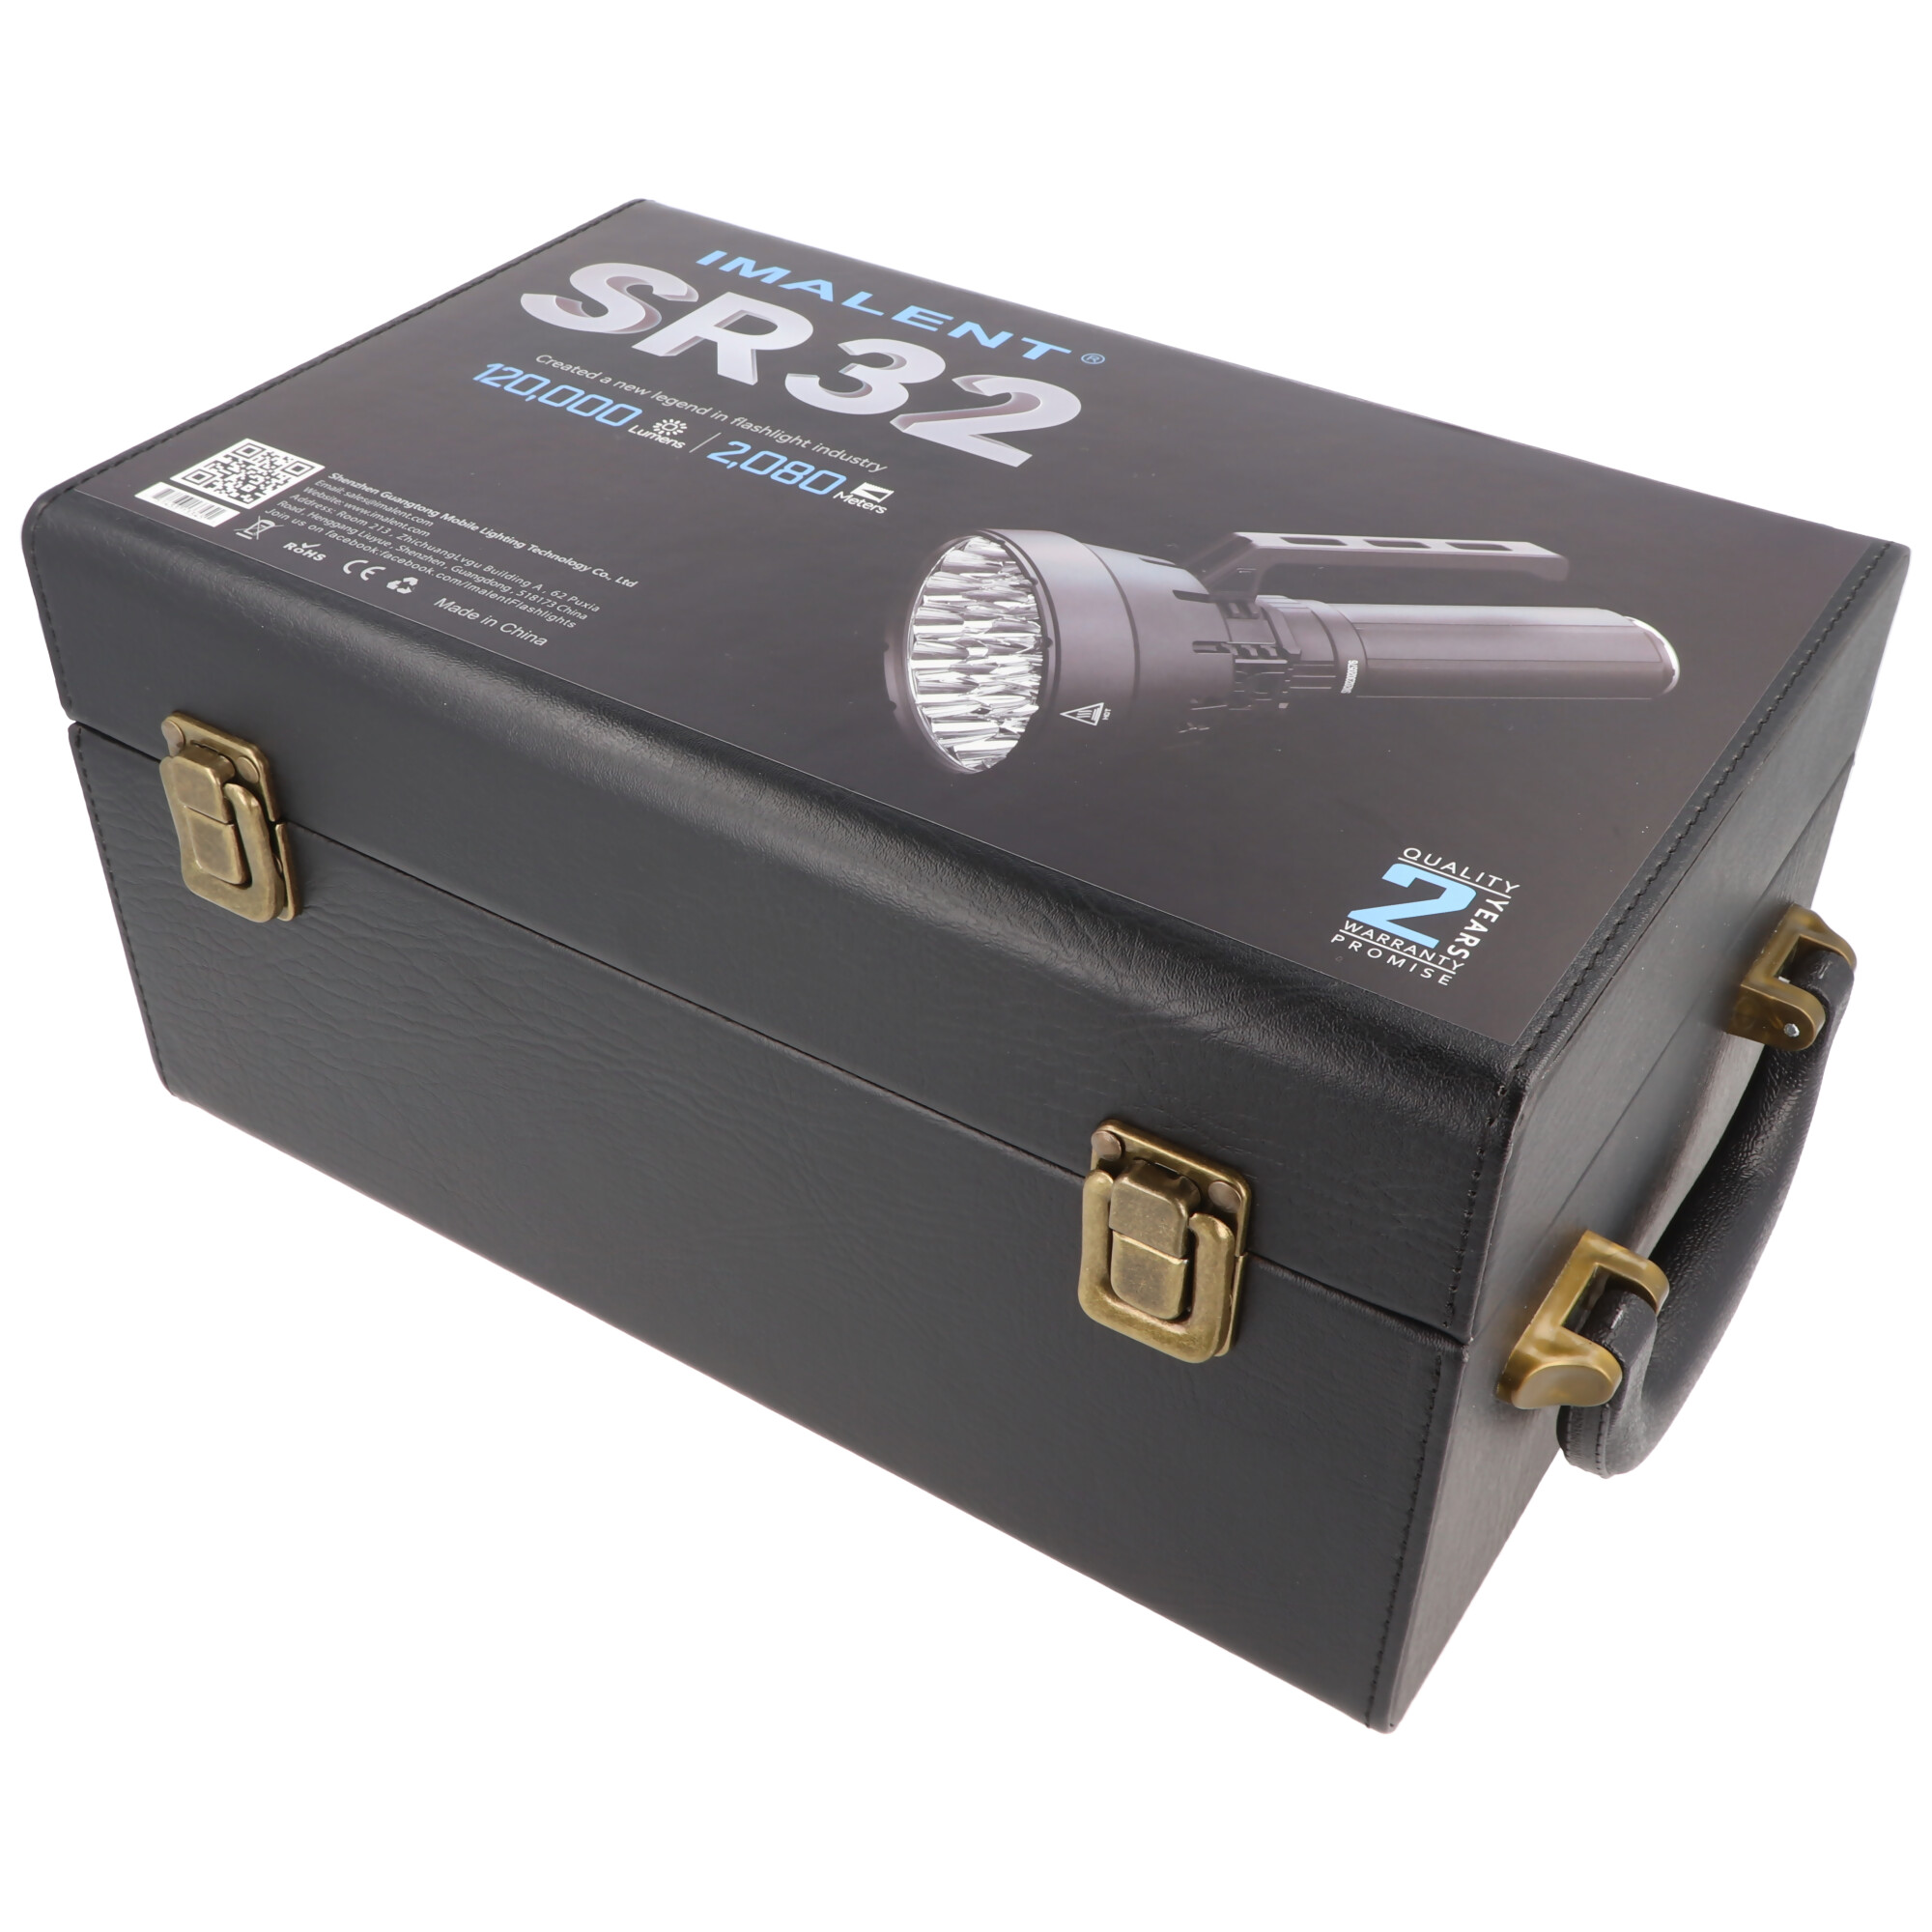 Imalent SR32 LED Taschenlampe mit 120.000 Lumen, ausgestattet mit 32 Stück CREE XHP50.3, Lieferung inklusive Akkupack, USB-C Lademöglich, mit Powerbankfunktion